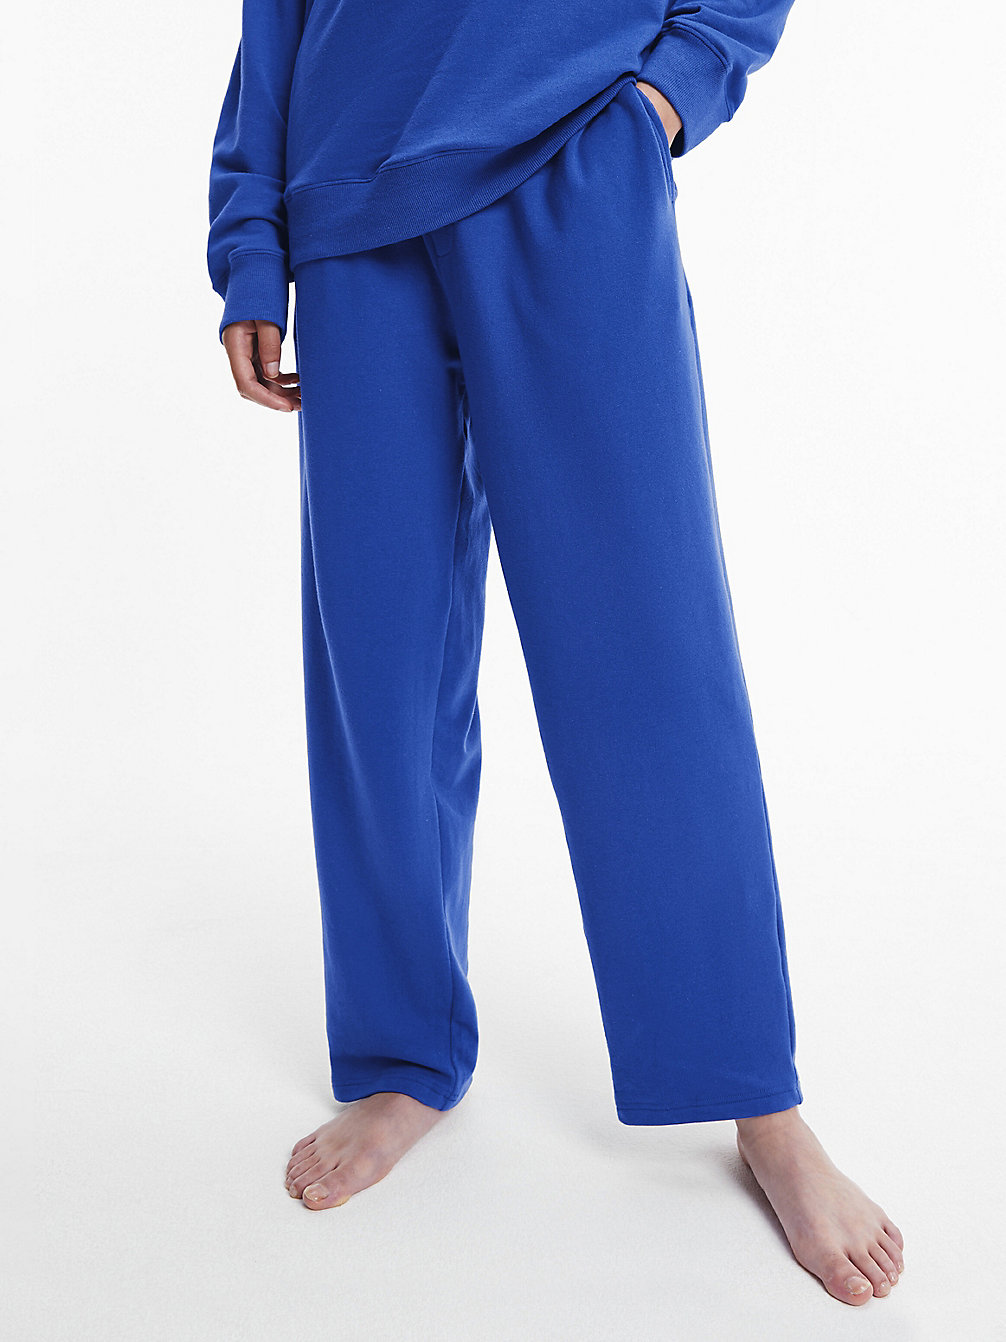 CLEMATIS > Spodnie Od Piżamy - Embossed Icon > undefined Kobiety - Calvin Klein